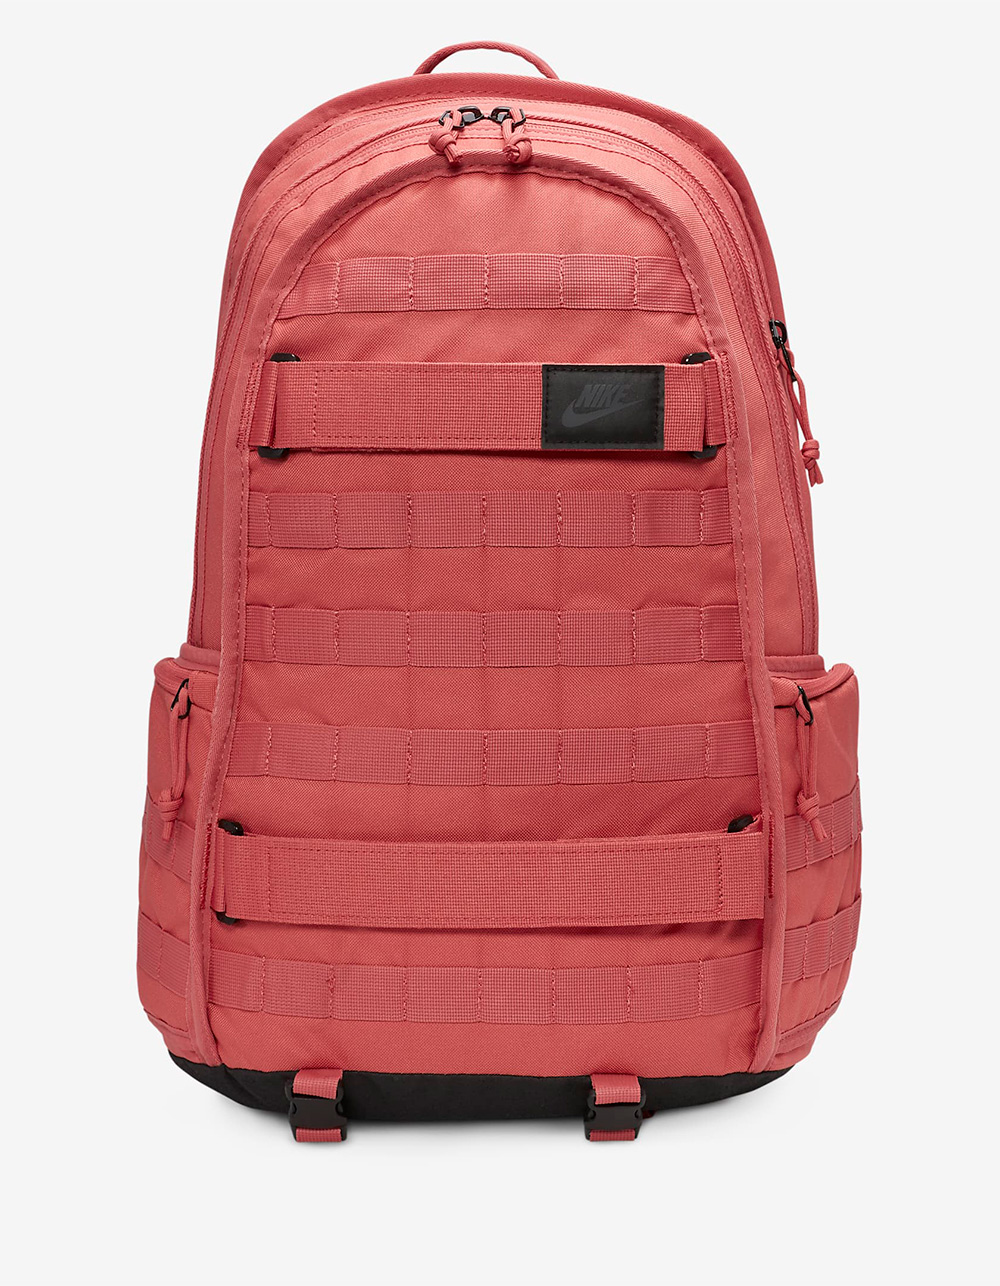 Sportswear RPM Backpack - Tillys